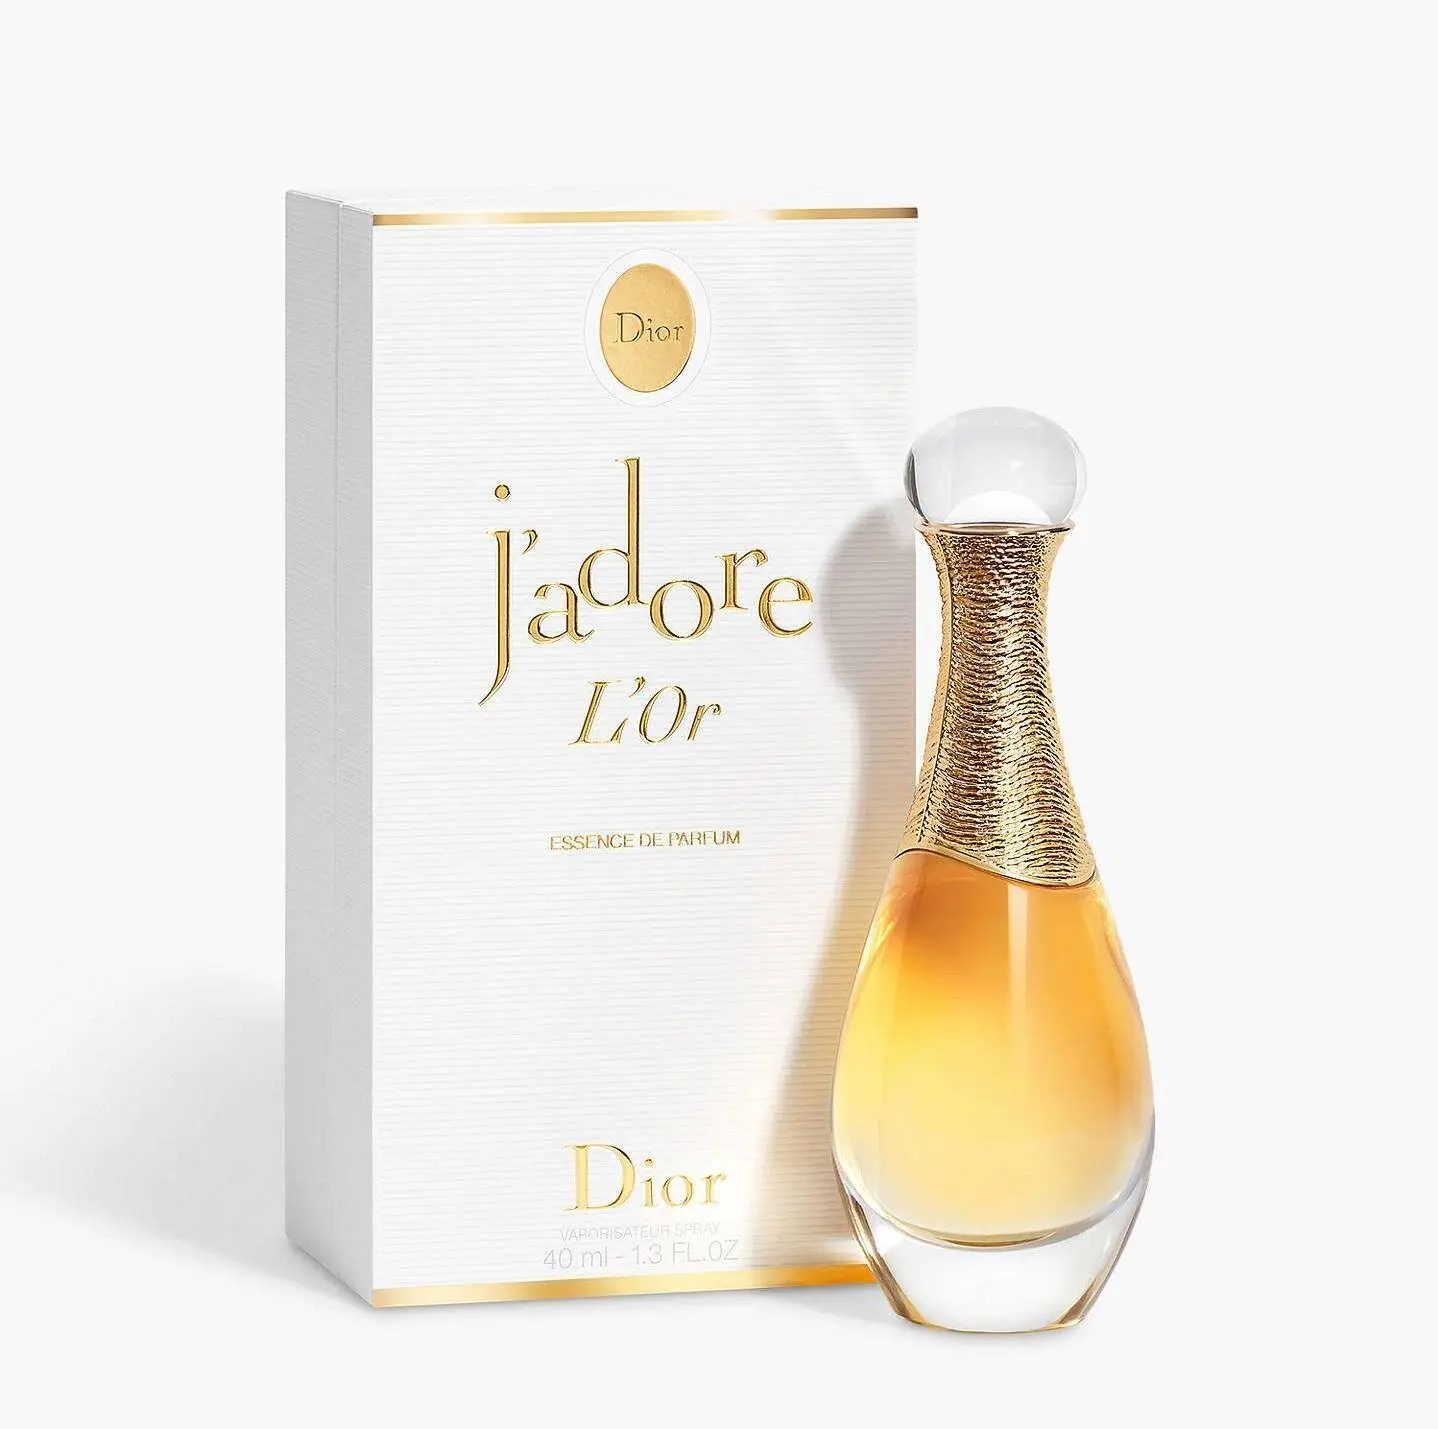 Set Nước hoa Dior Jadore EDP 100ml  Refill 10ml  Mỹ Phẩm Hàng Hiệu Pháp   Paris in your bag